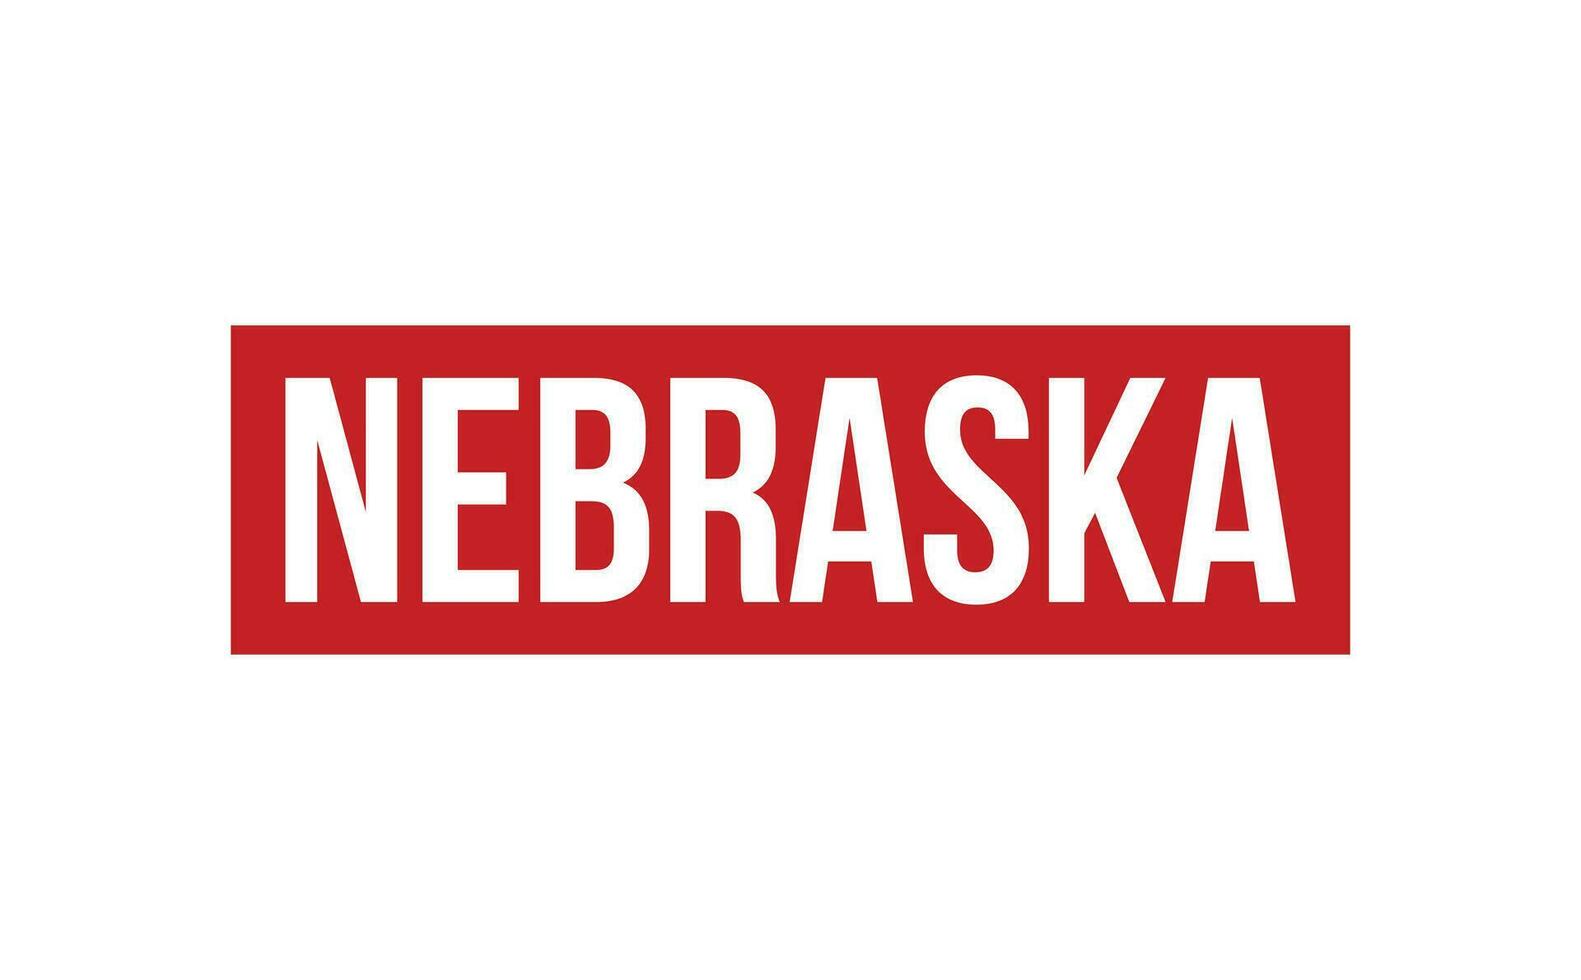 Nebraska gomma da cancellare francobollo foca vettore